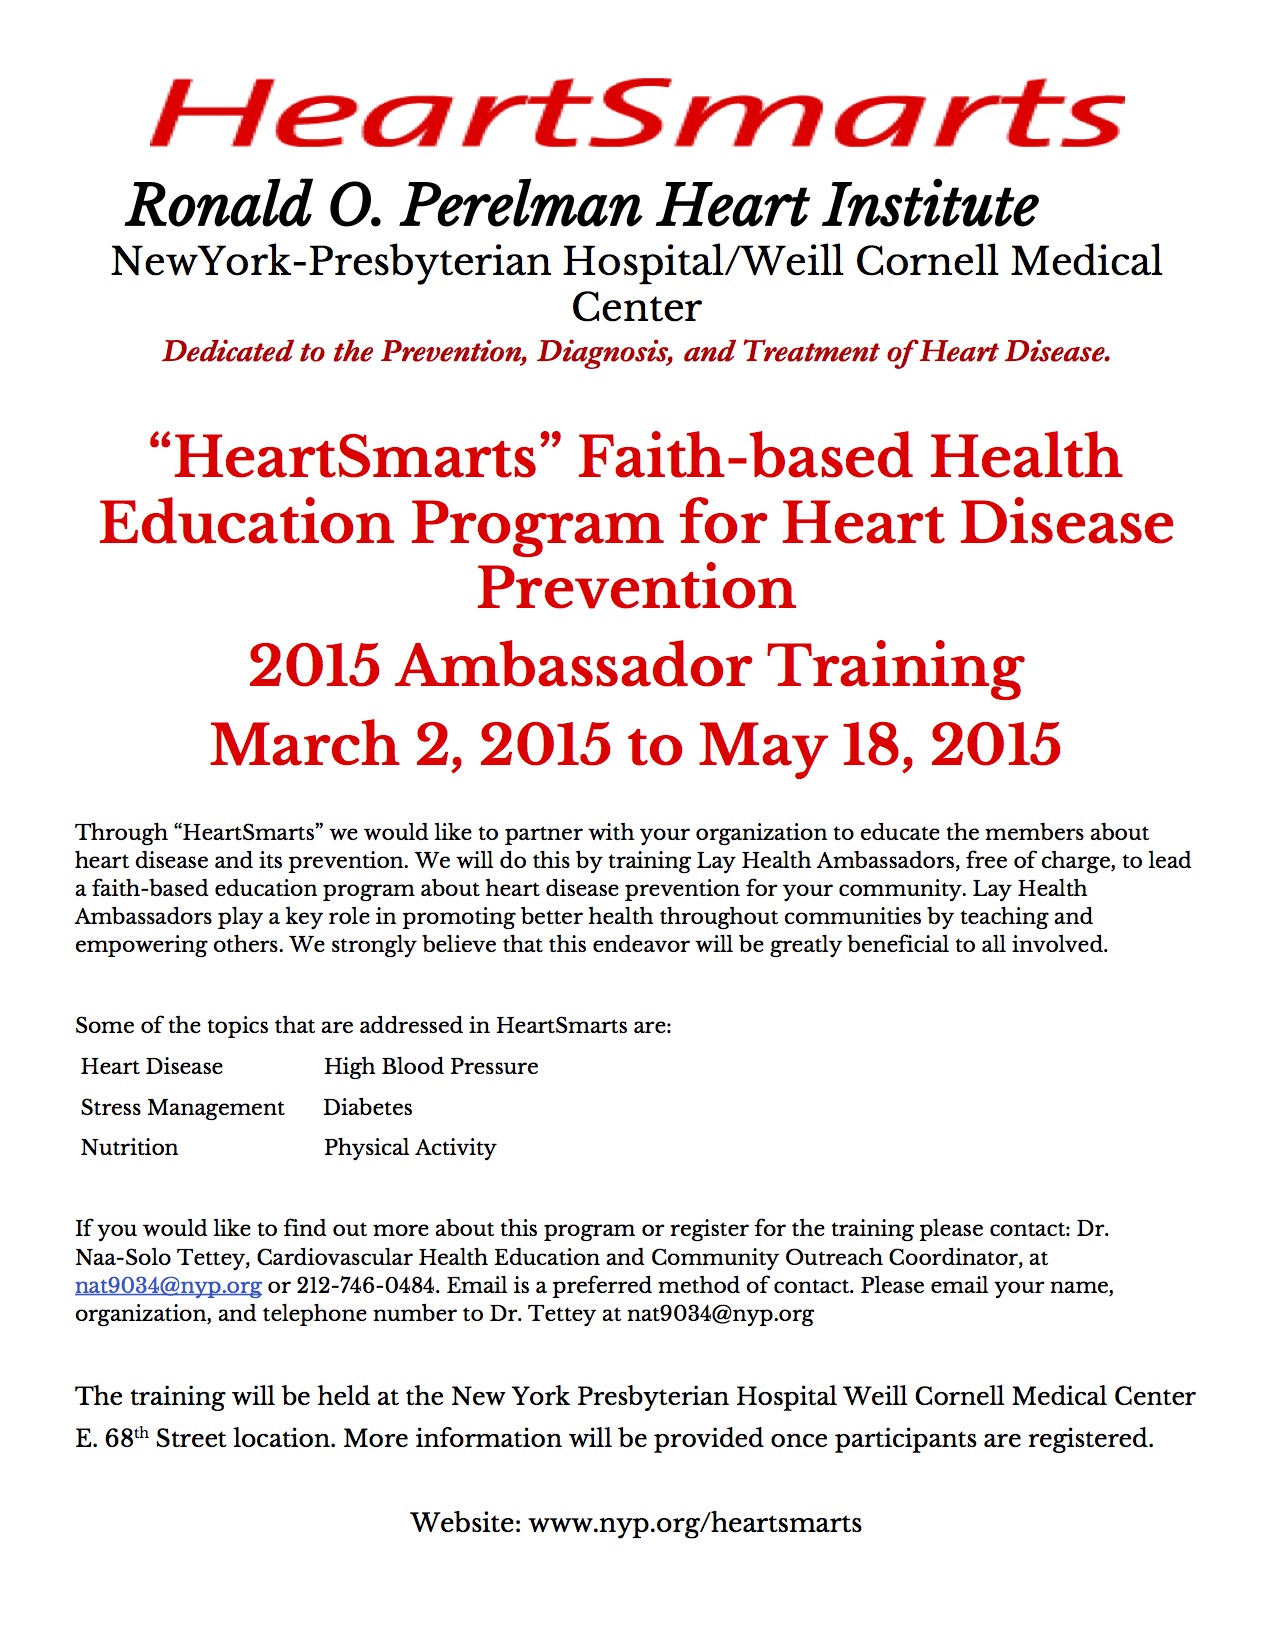 HeartSmartsAmbassadorTraining2015Flier2-30